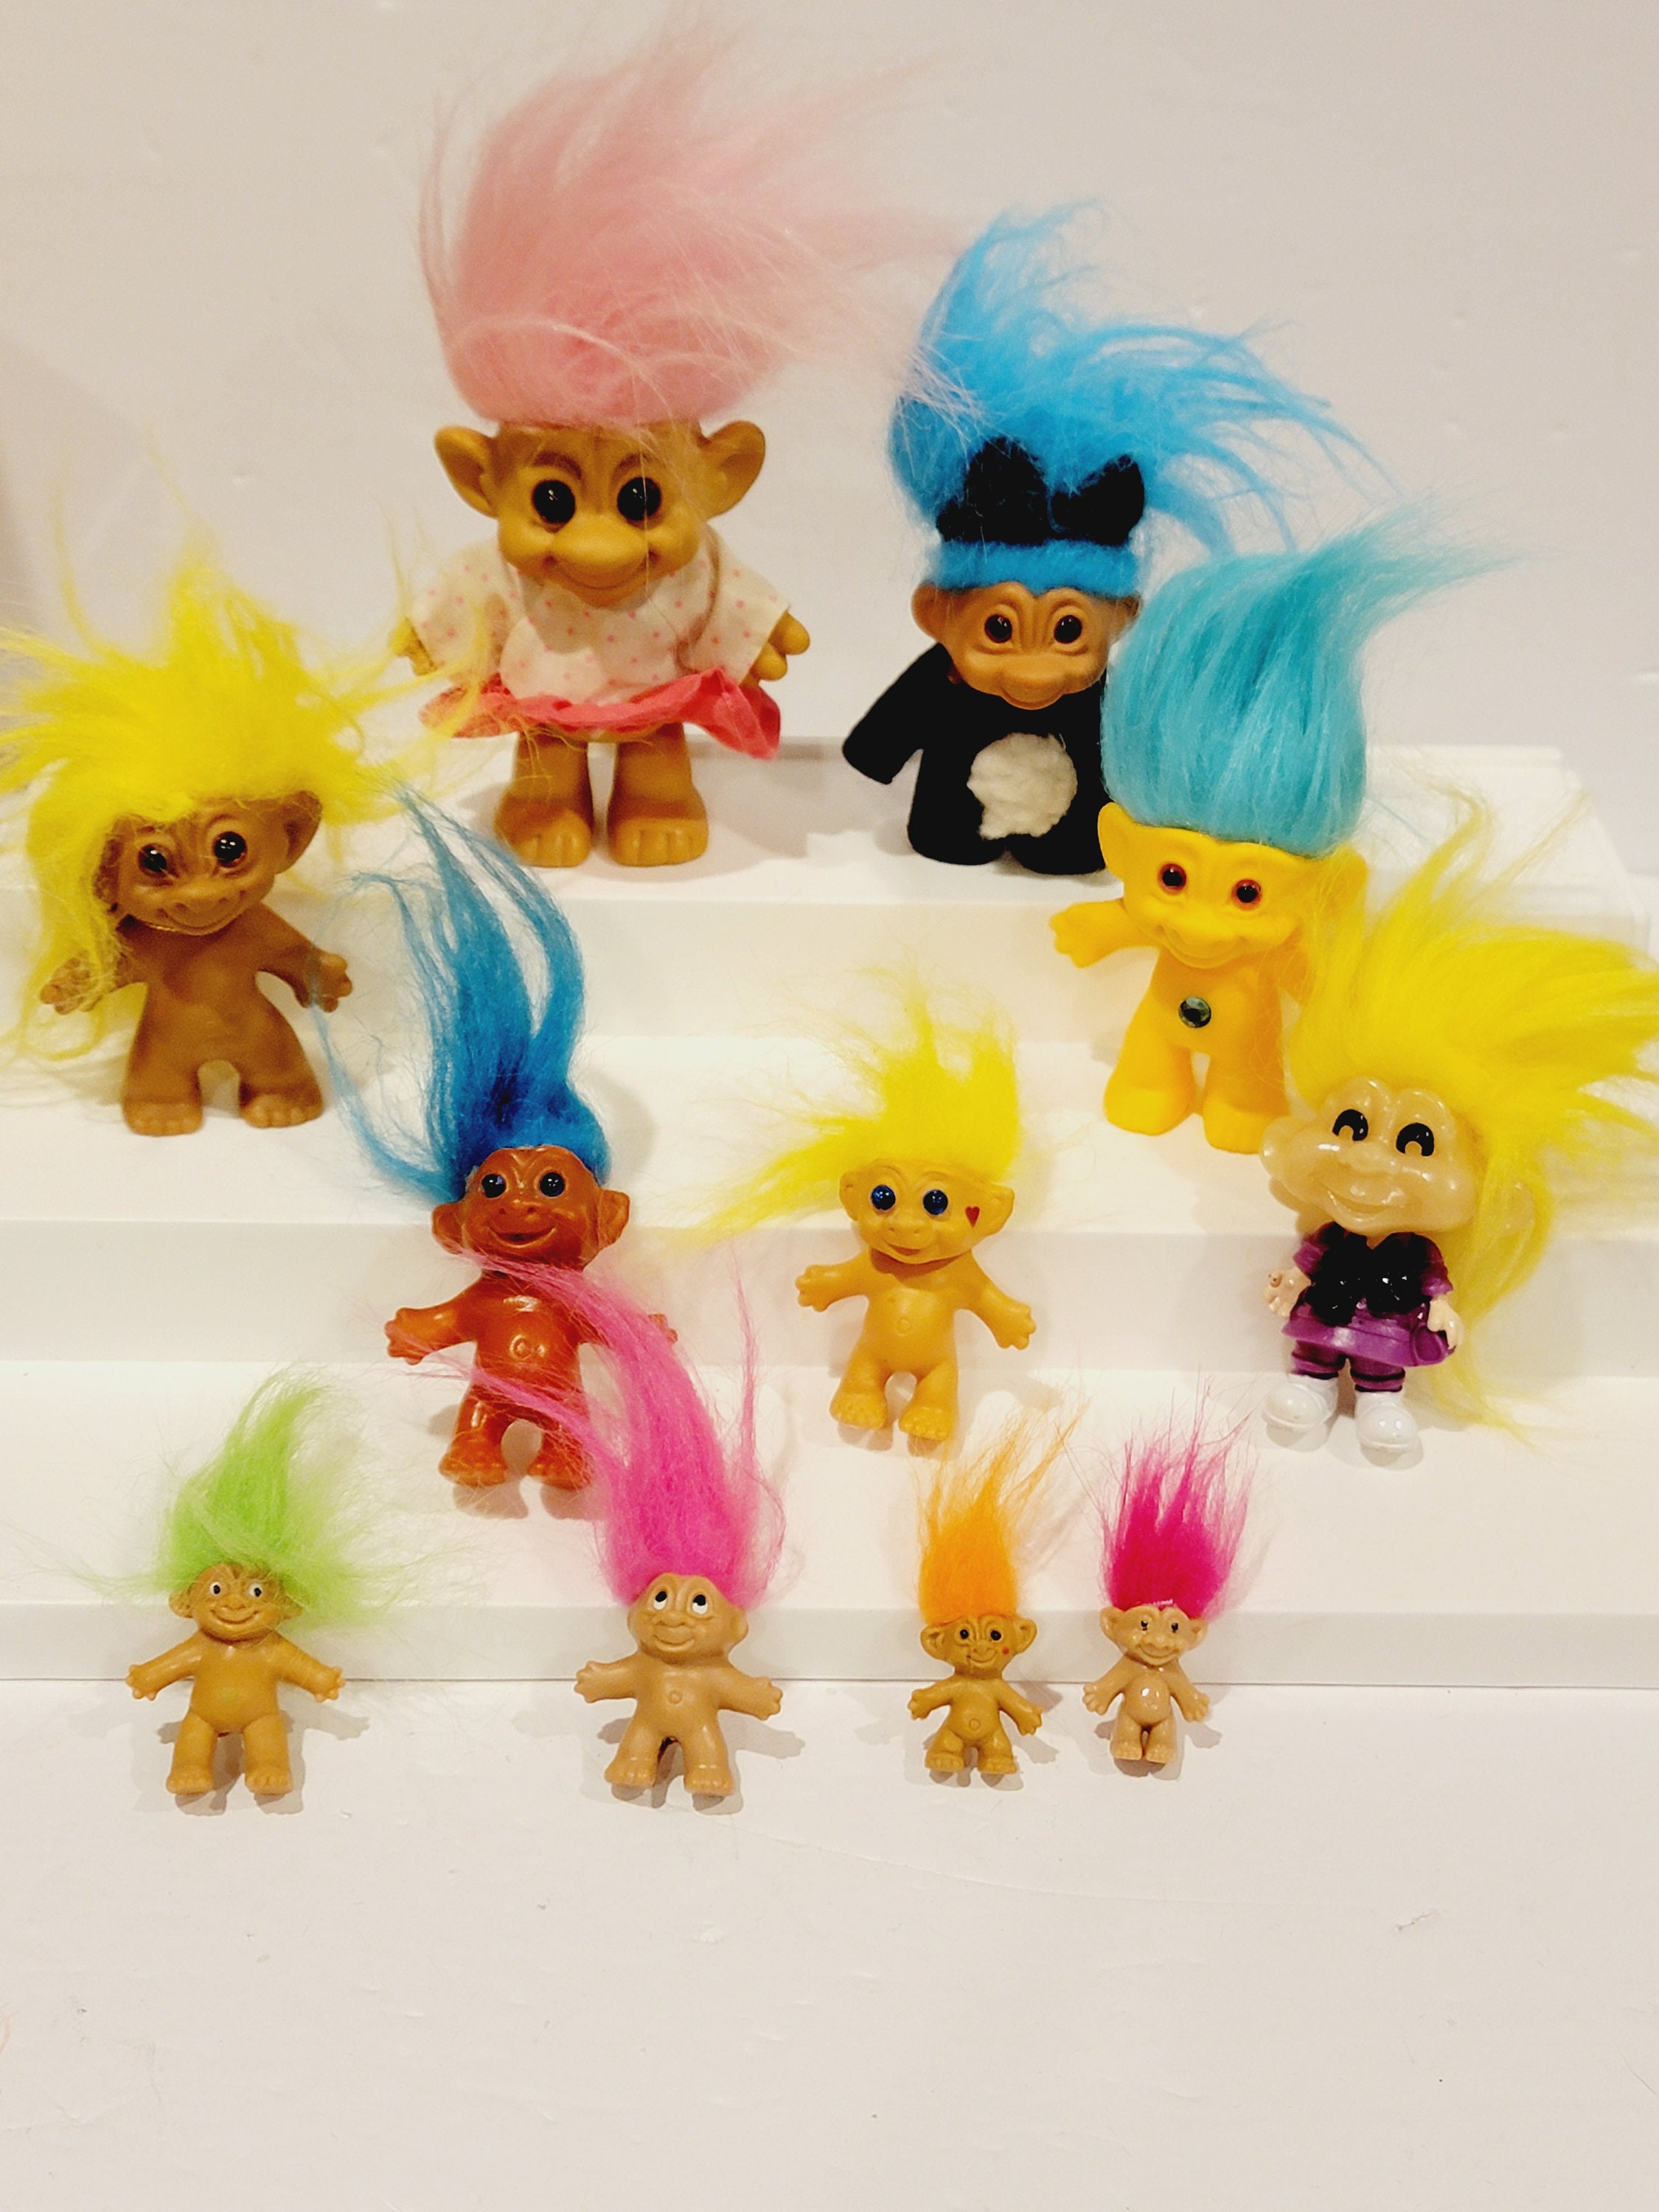 Trolls Mini Dolls Series 1 - 1.0 Set